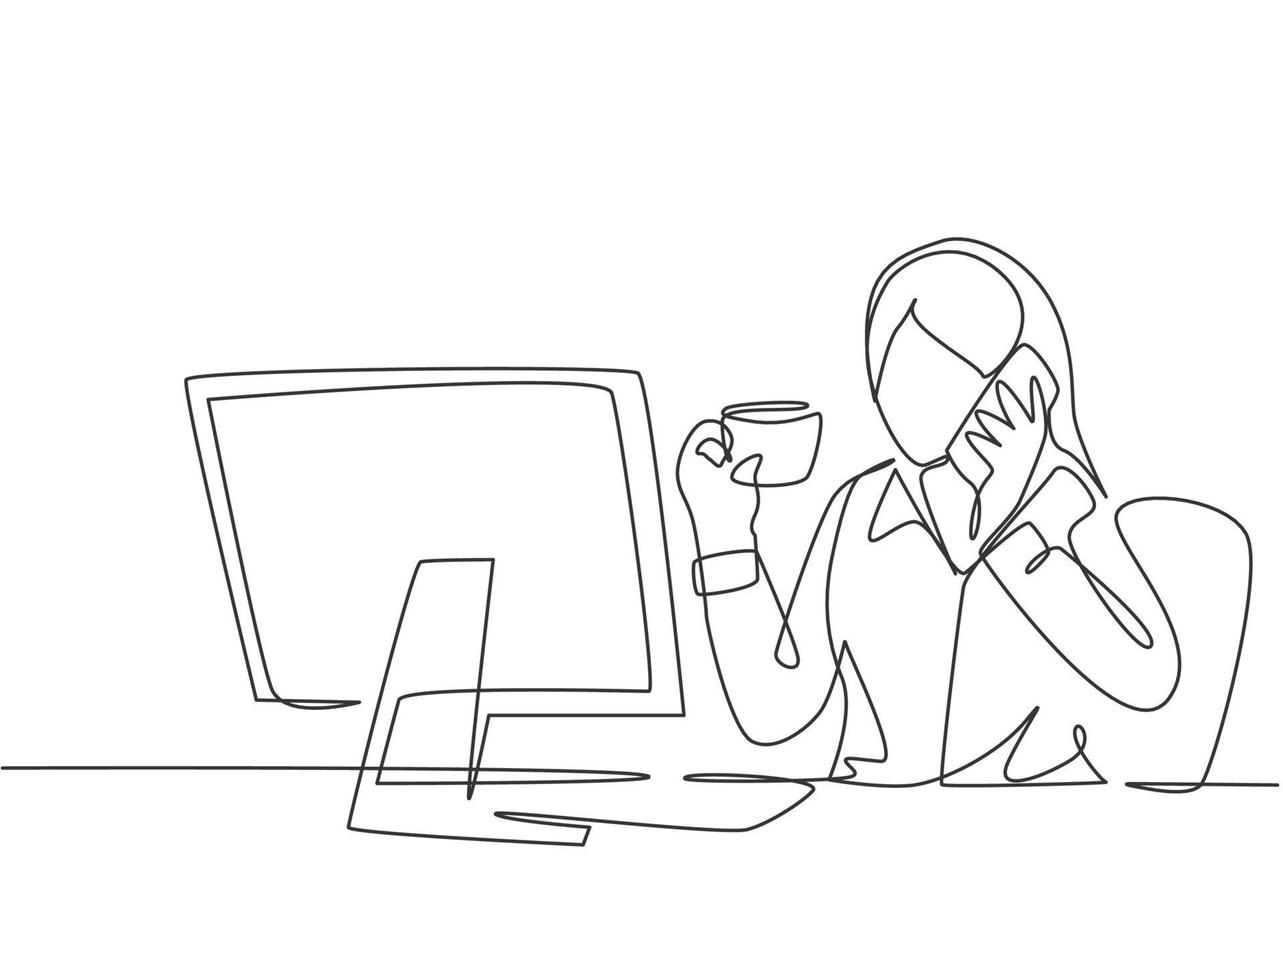 un dibujo de línea continua de una joven empleada bebiendo una taza de café y llamando a su amiga usando el teléfono celular en la oficina. Ilustración de vector de diseño de dibujo de línea única de concepto de conversación telefónica